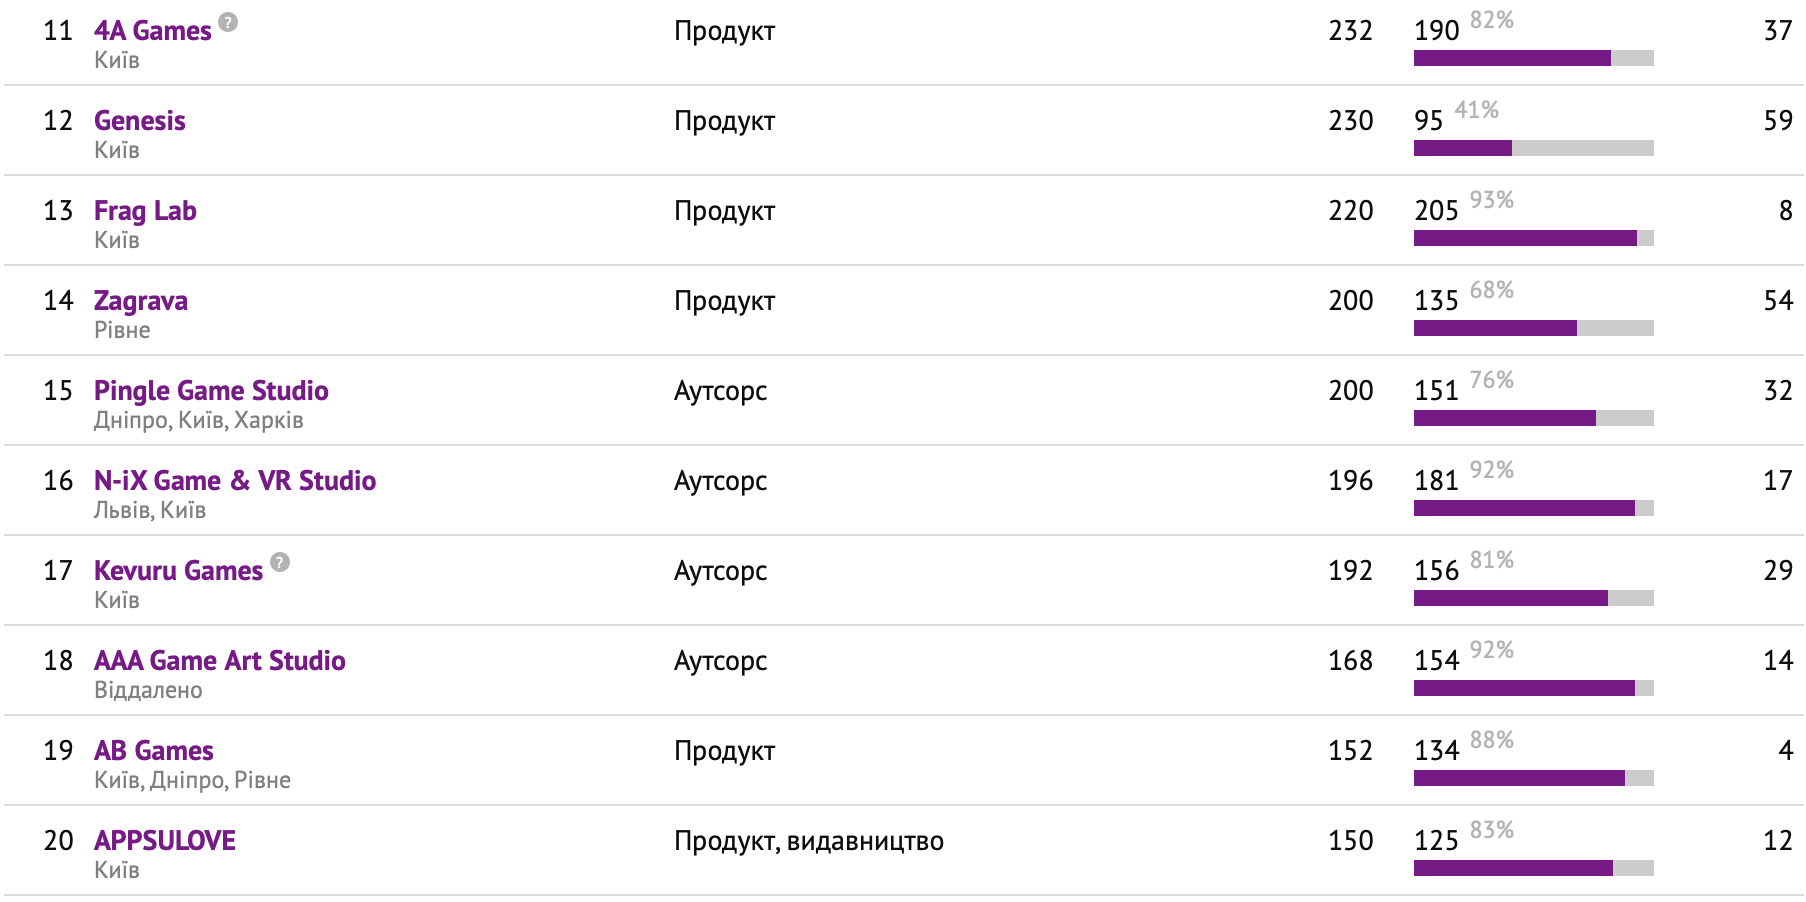 Від Playrix до Paga Group: рейтинг геймдев-компаній України - tech, news, career